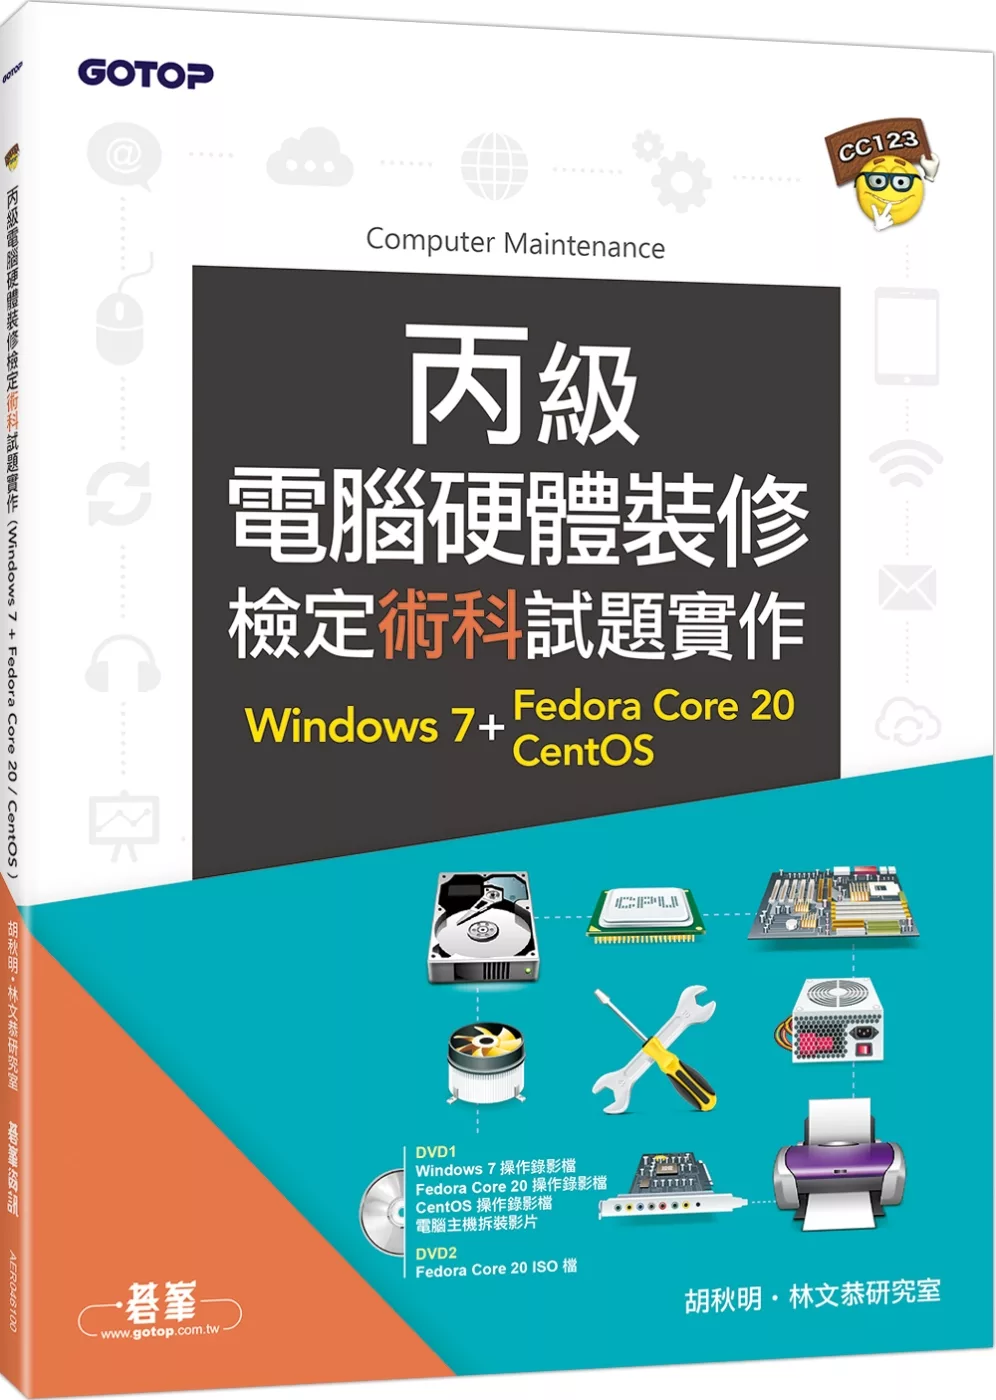 丙級電腦硬體裝修檢定術科試題實作：Windows 7 + Fedora Core 20 + CentOS